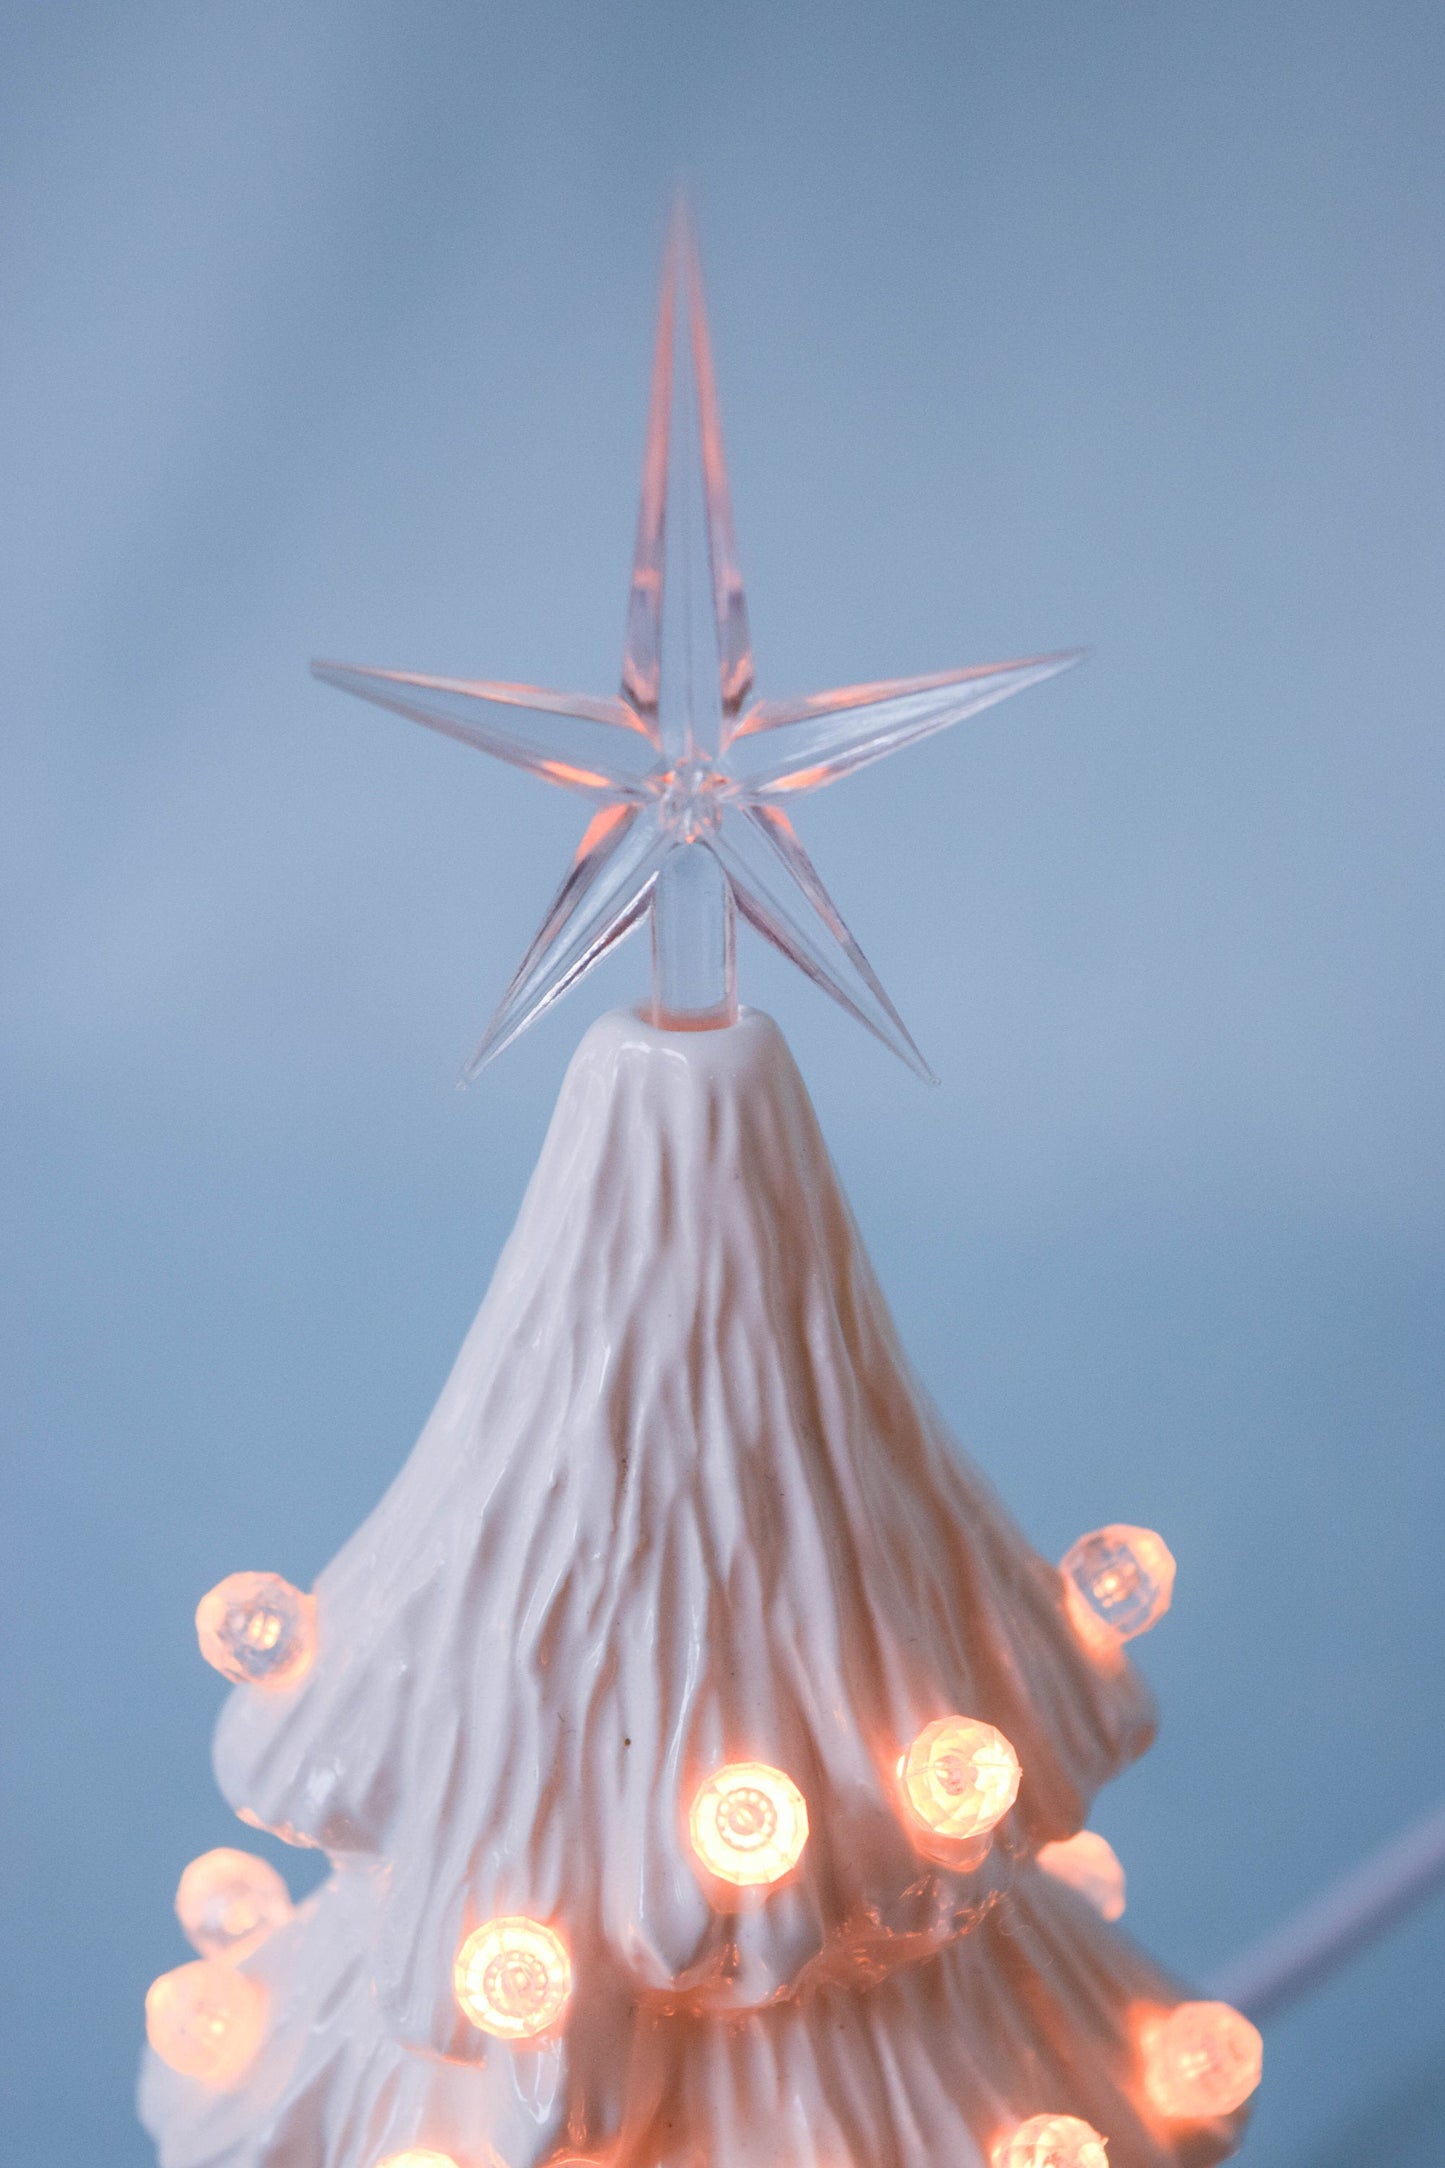 Ceramic White Christmas Tree